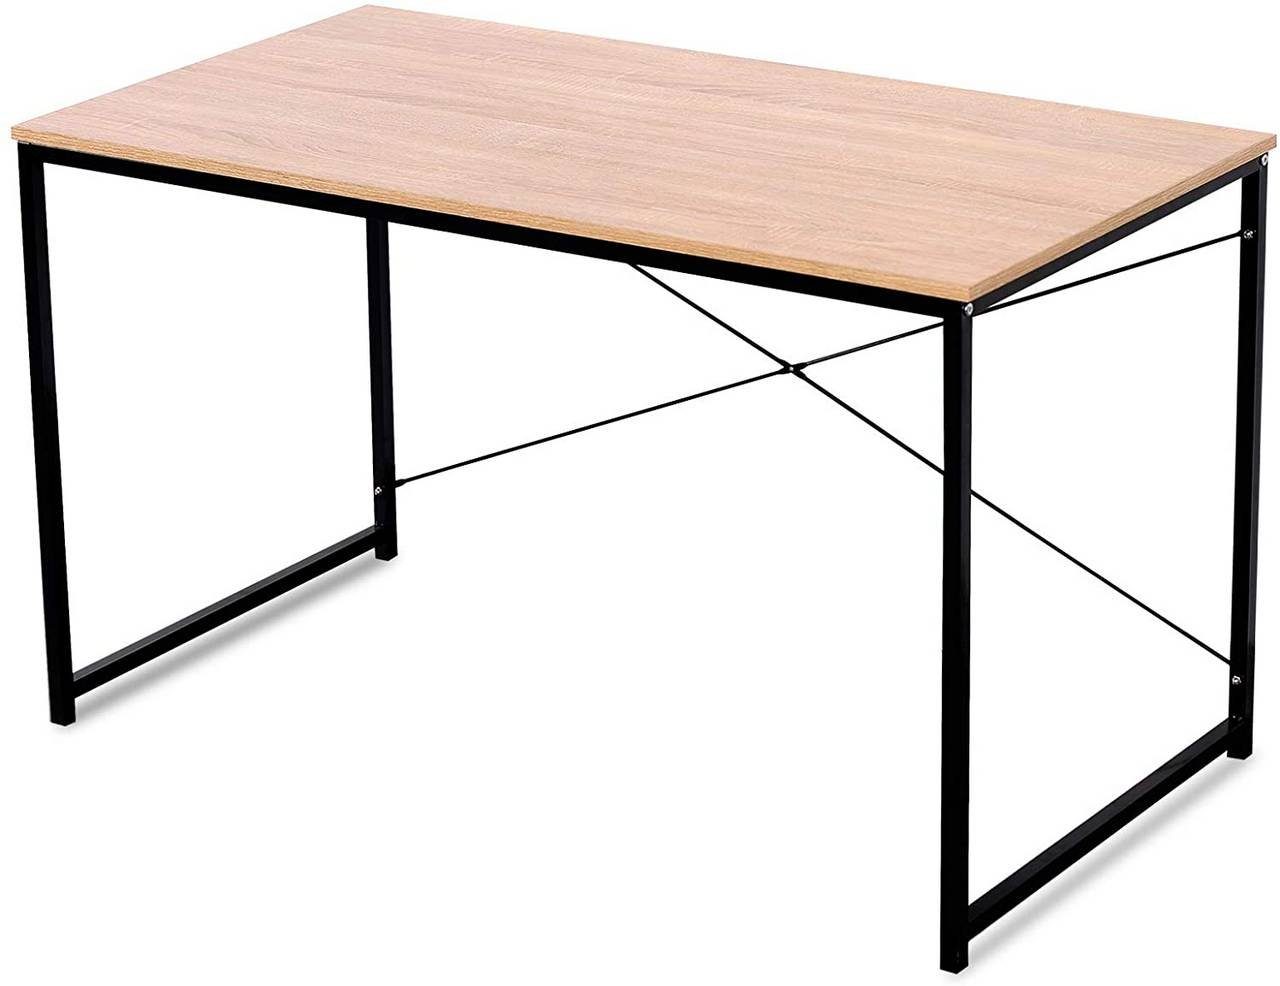 & natur Schreibtisch, Holz Schreibtisch Woltu in aus Design modernem Stahl